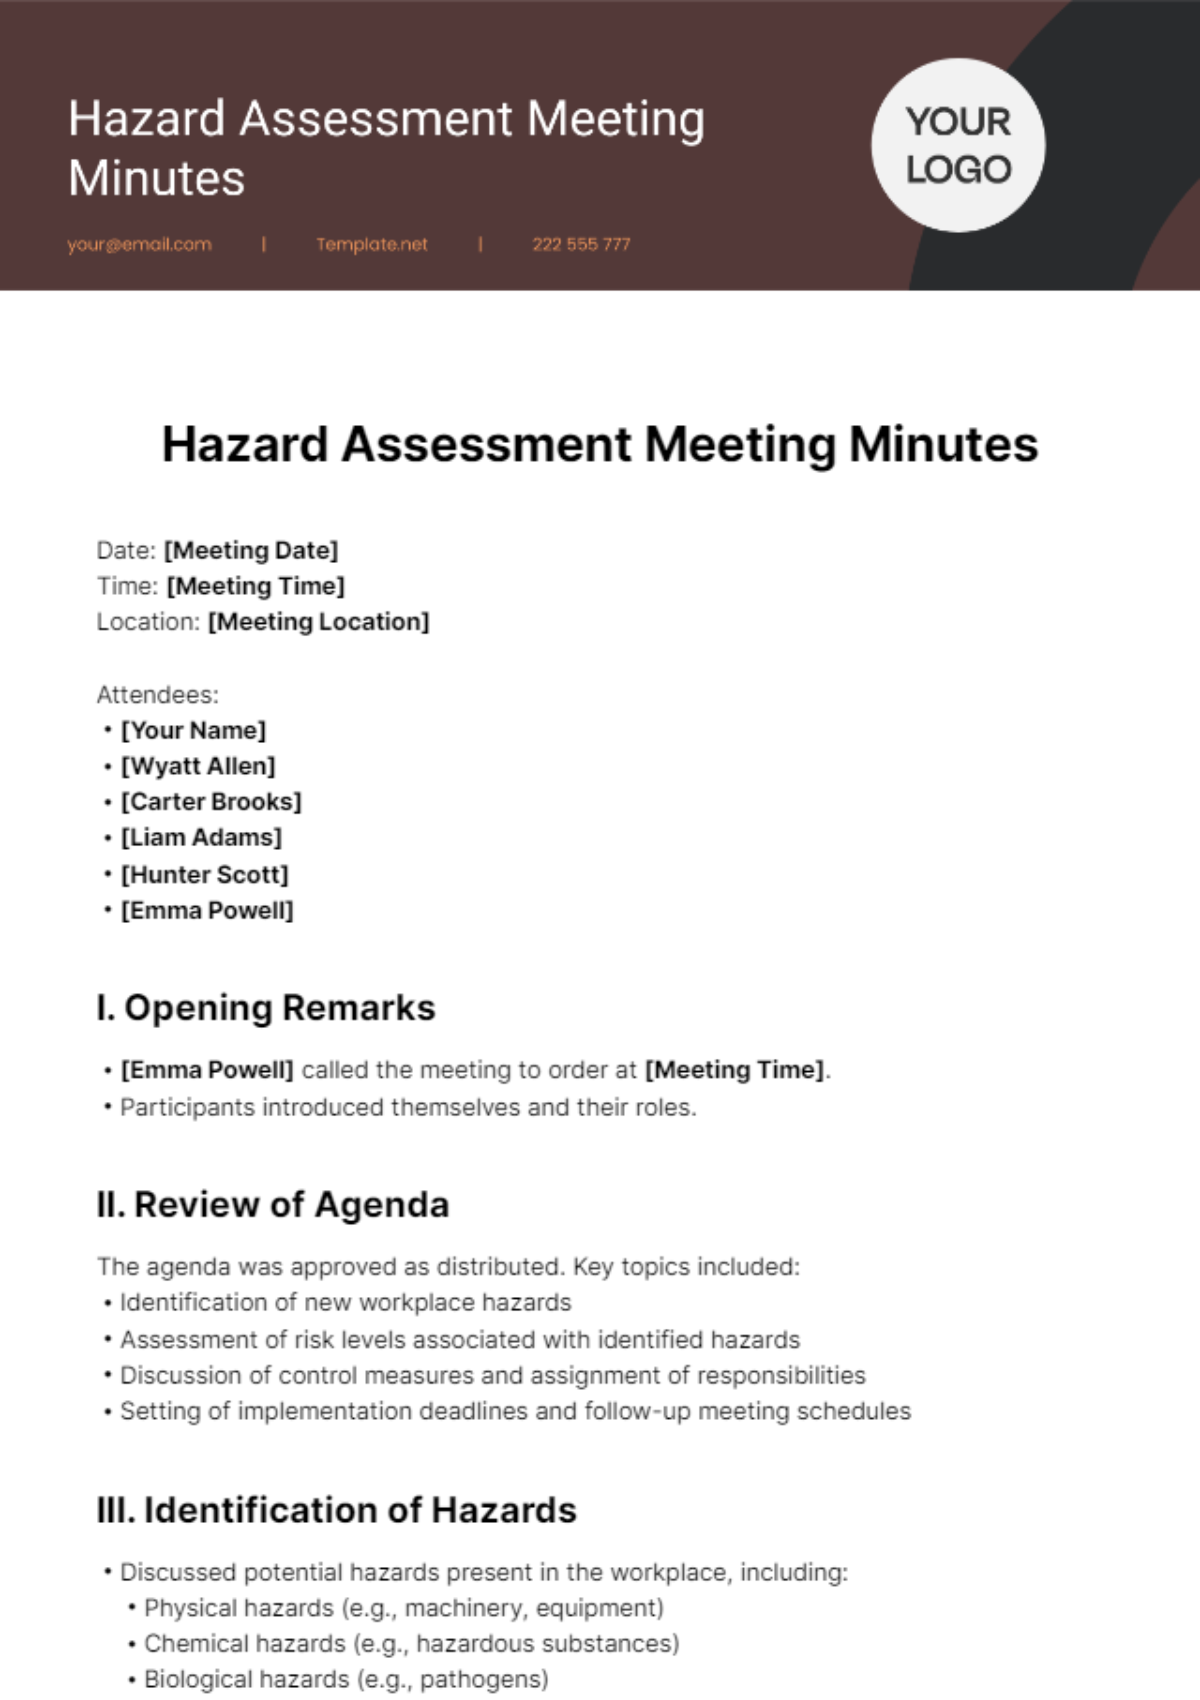 Hazard Assessment Meeting Minutes Template